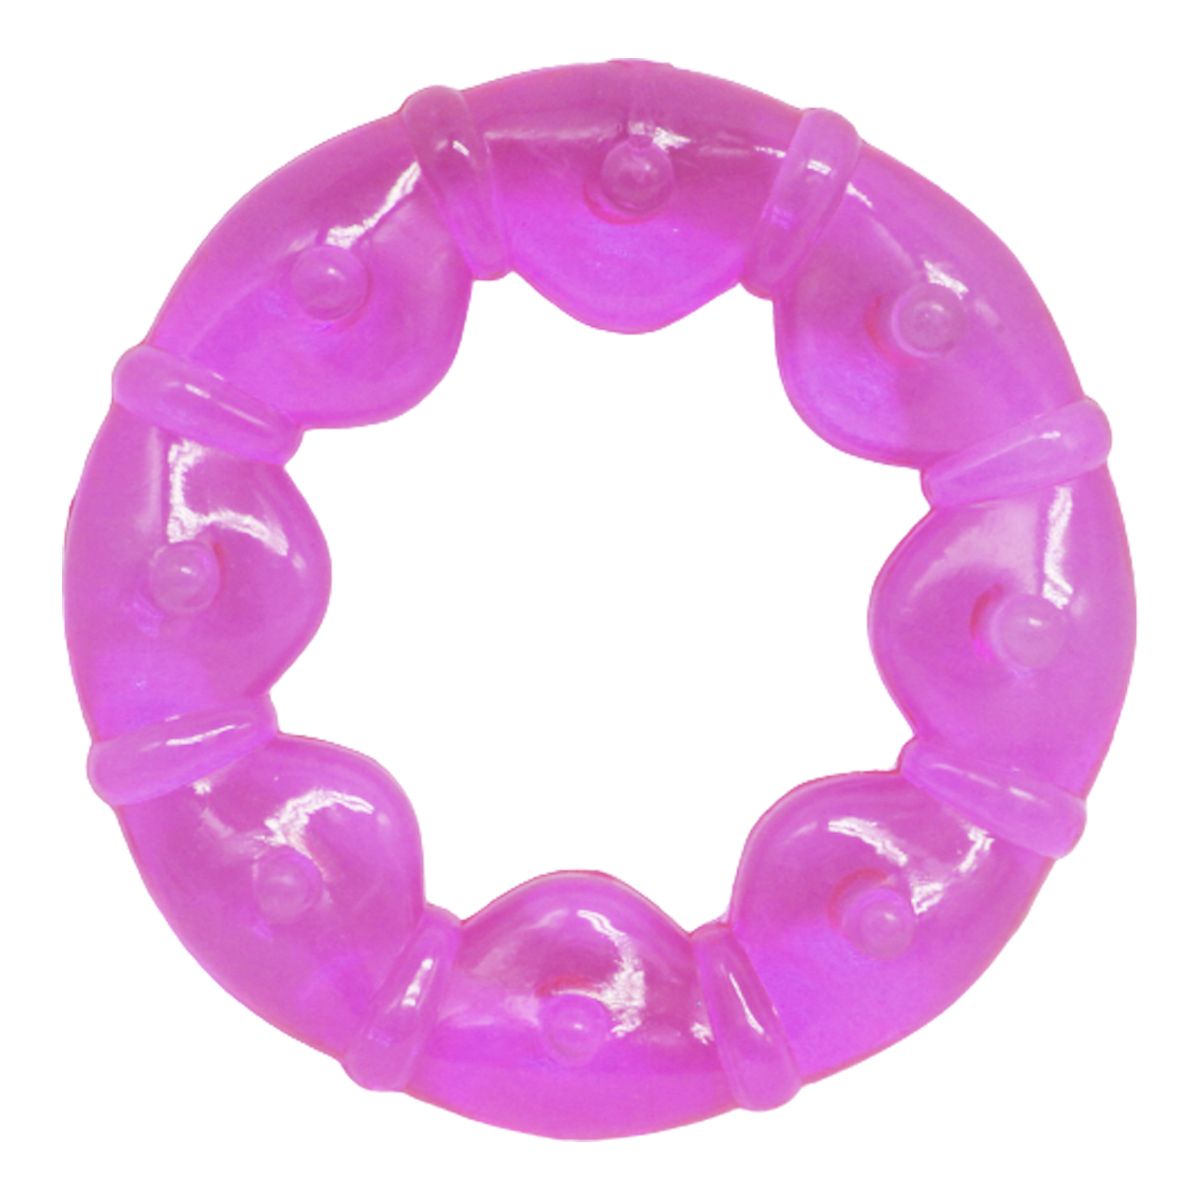 Прорезыватель с водой "Круг", фиолетовый